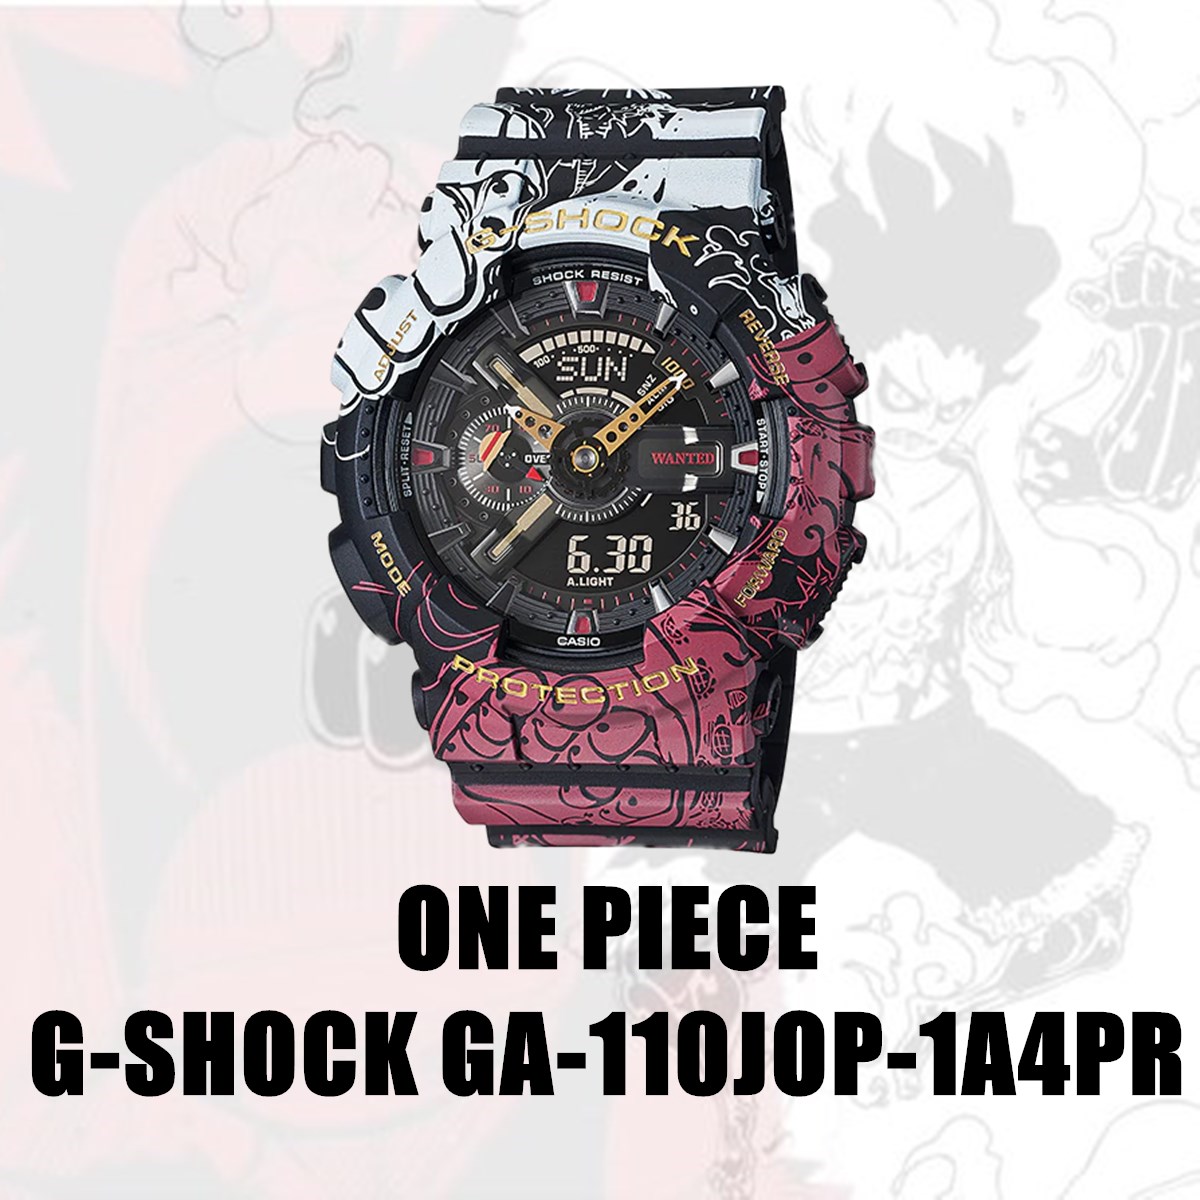 ลองดูภาพสินค้า CASIO G-SHOCK นาฬิกาข้อมือผู้ชาย รุ่นGA-110JOP-1A4PR รูปแบบ ONE PIECE หน้าปัด 40mm พร้อมกล่อง